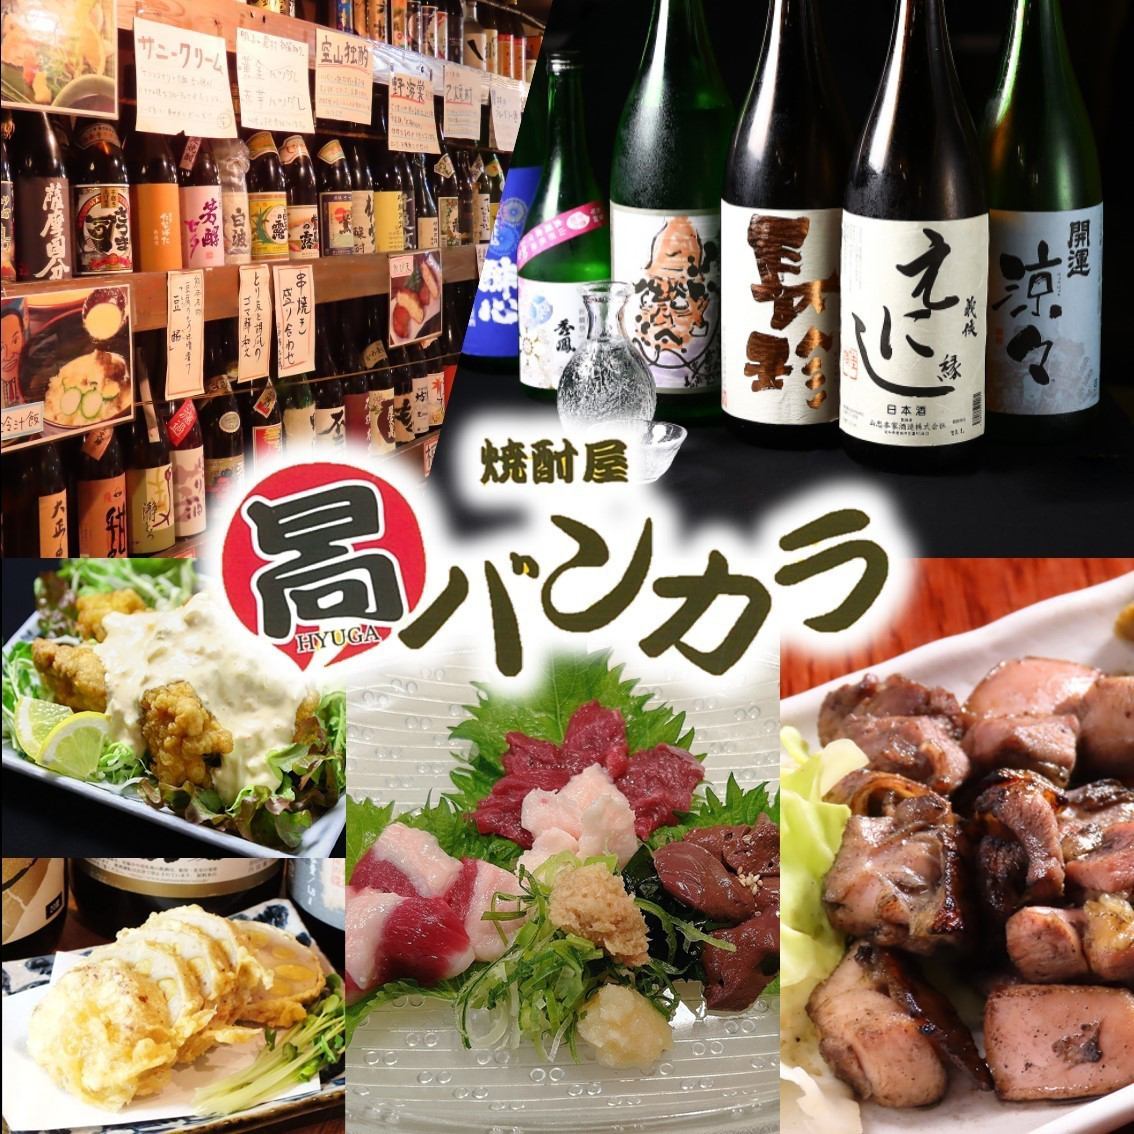 A Miyazaki and Kyushu cuisine izakaya where you can enjoy 300 types of authentic shochu carefully selected by the owner in Sakae, Nagoya.